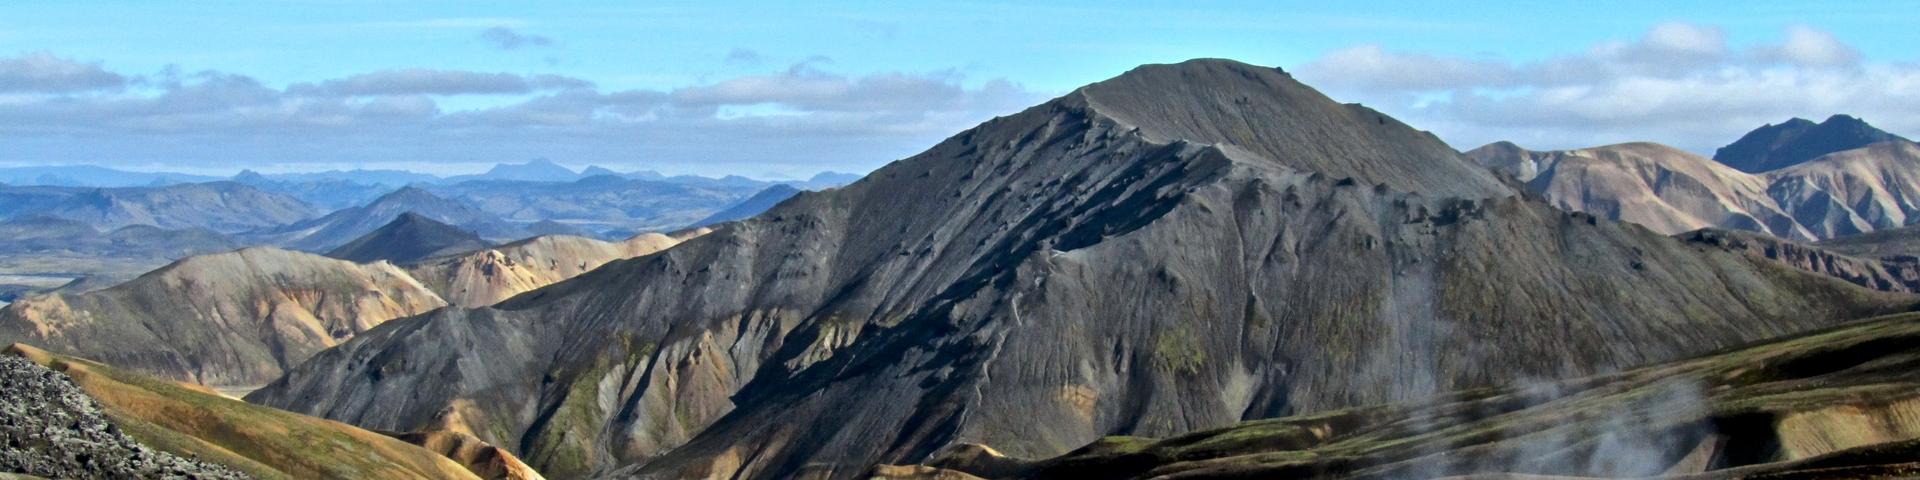 Massif rhyolitique et sources chaudes de Landmannalaugar, Islande